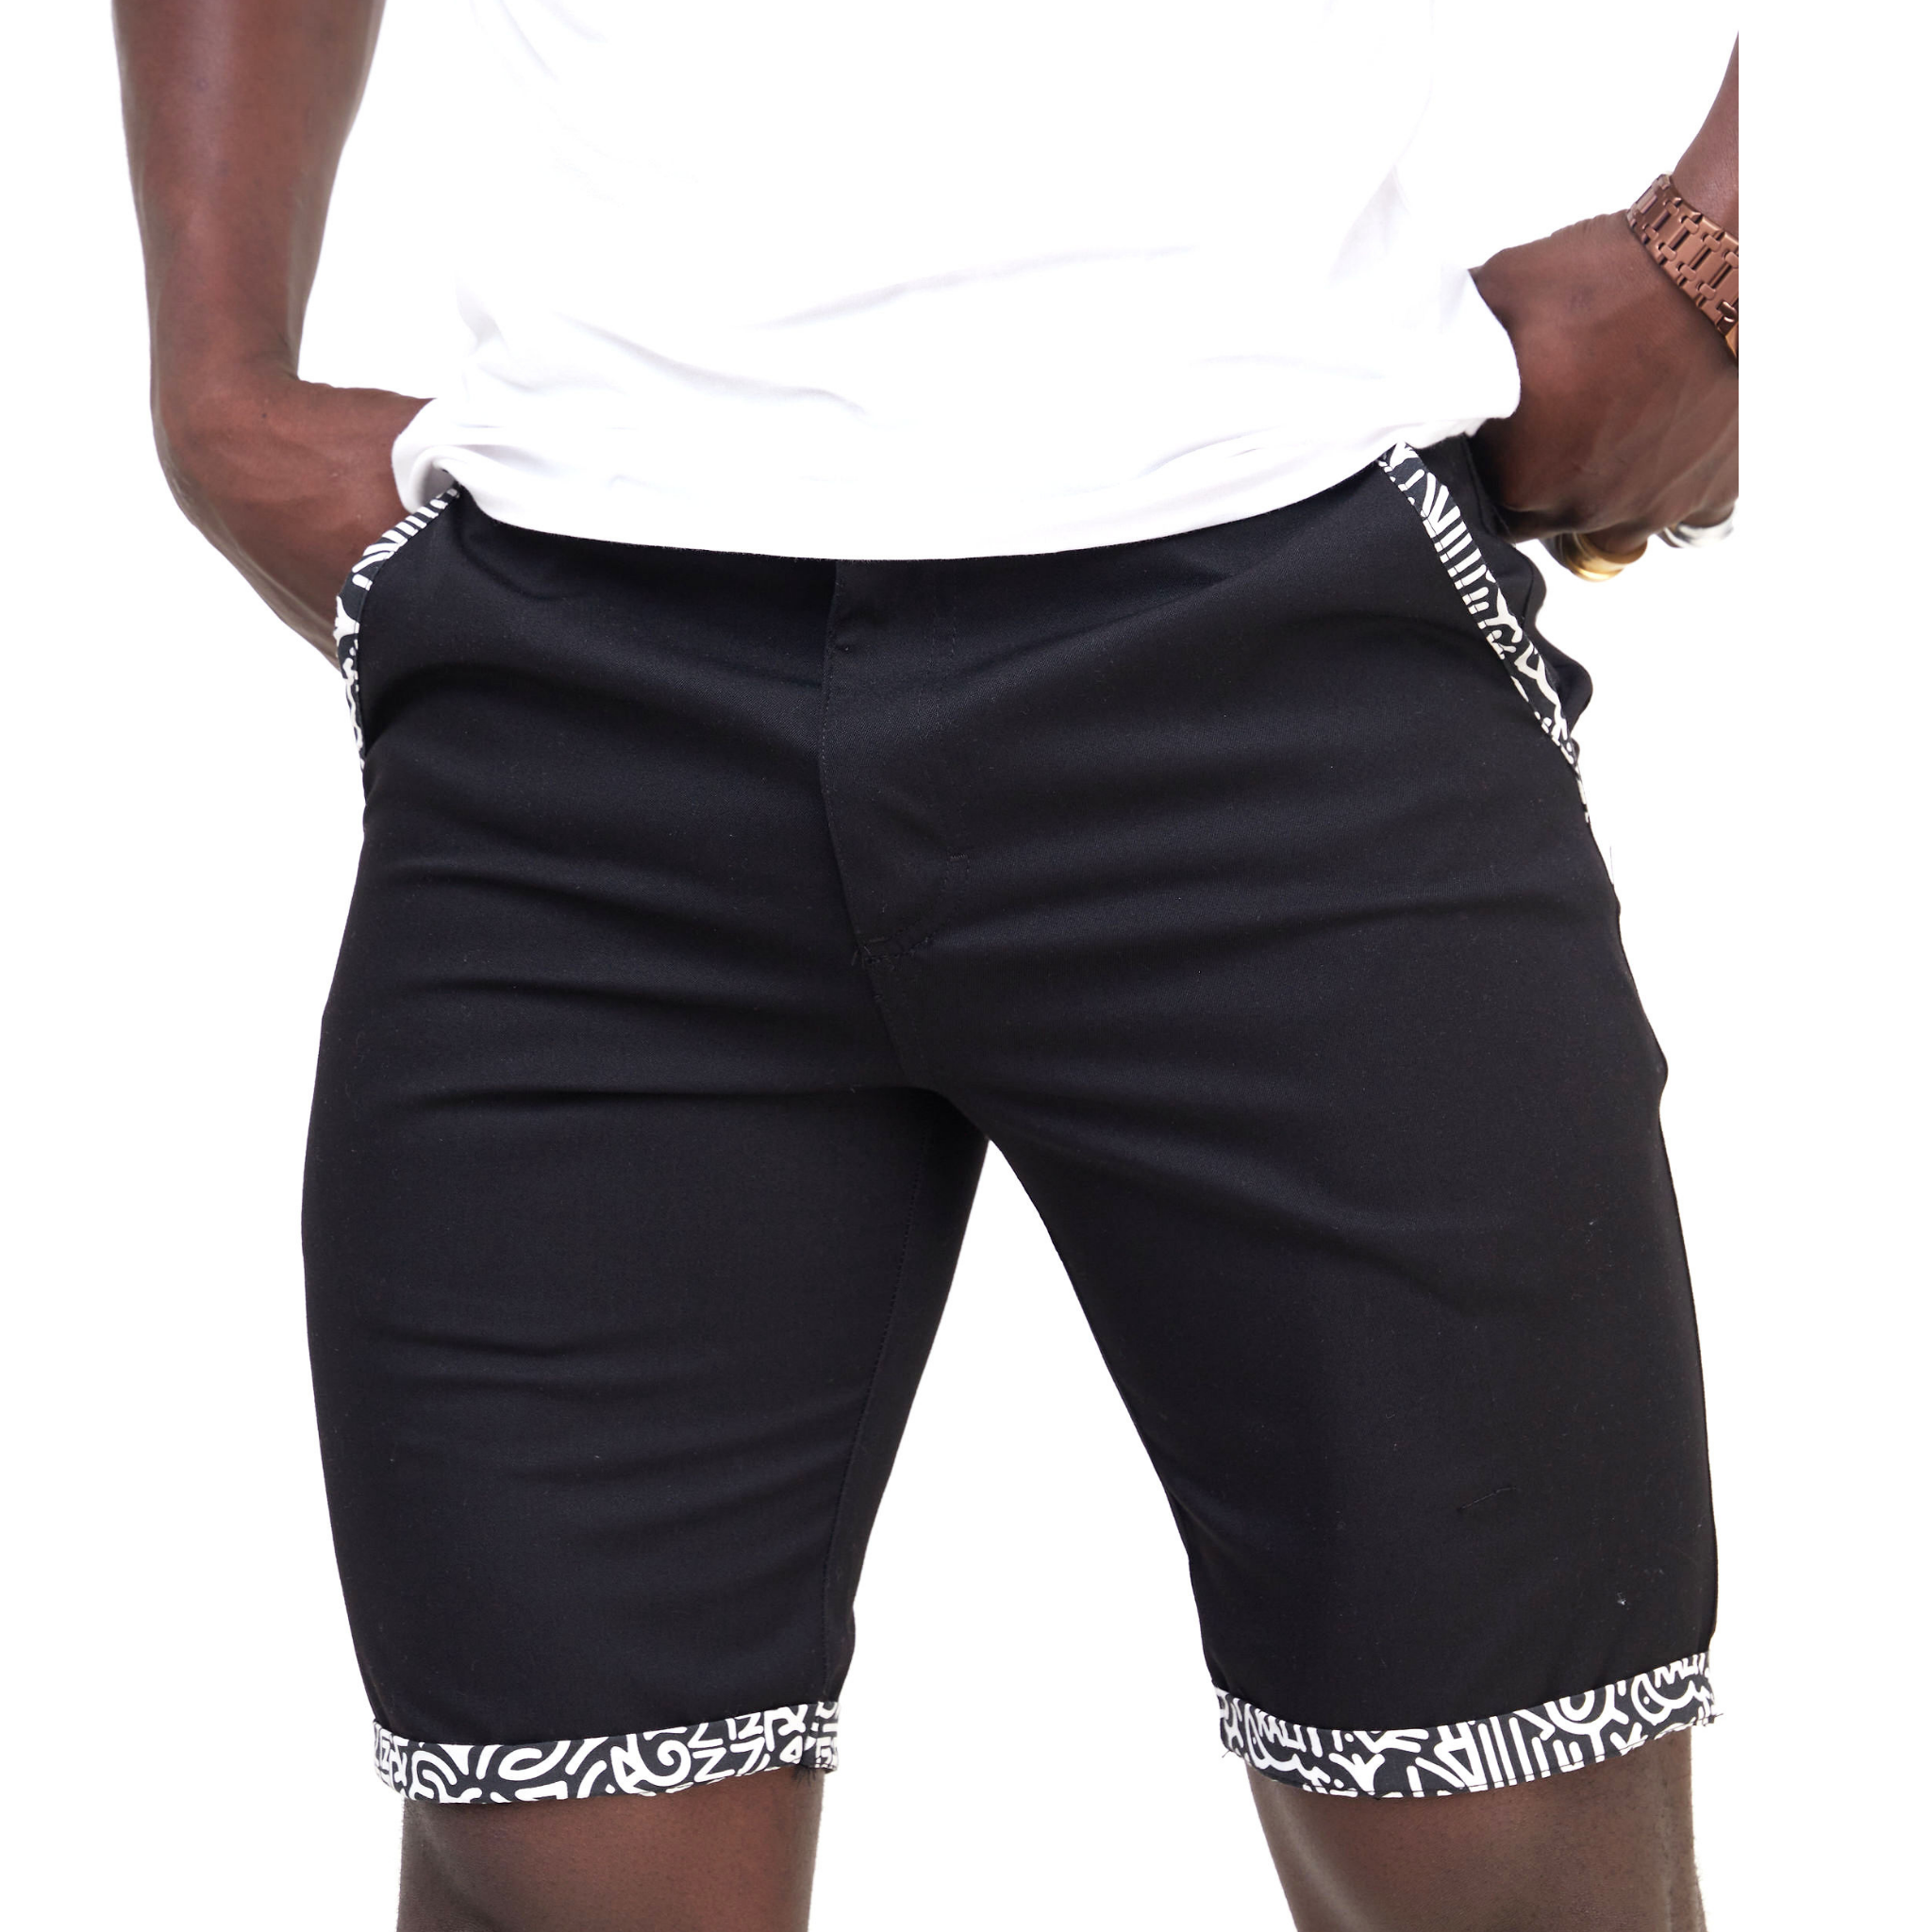 Kali Shorts: Black with KK Print